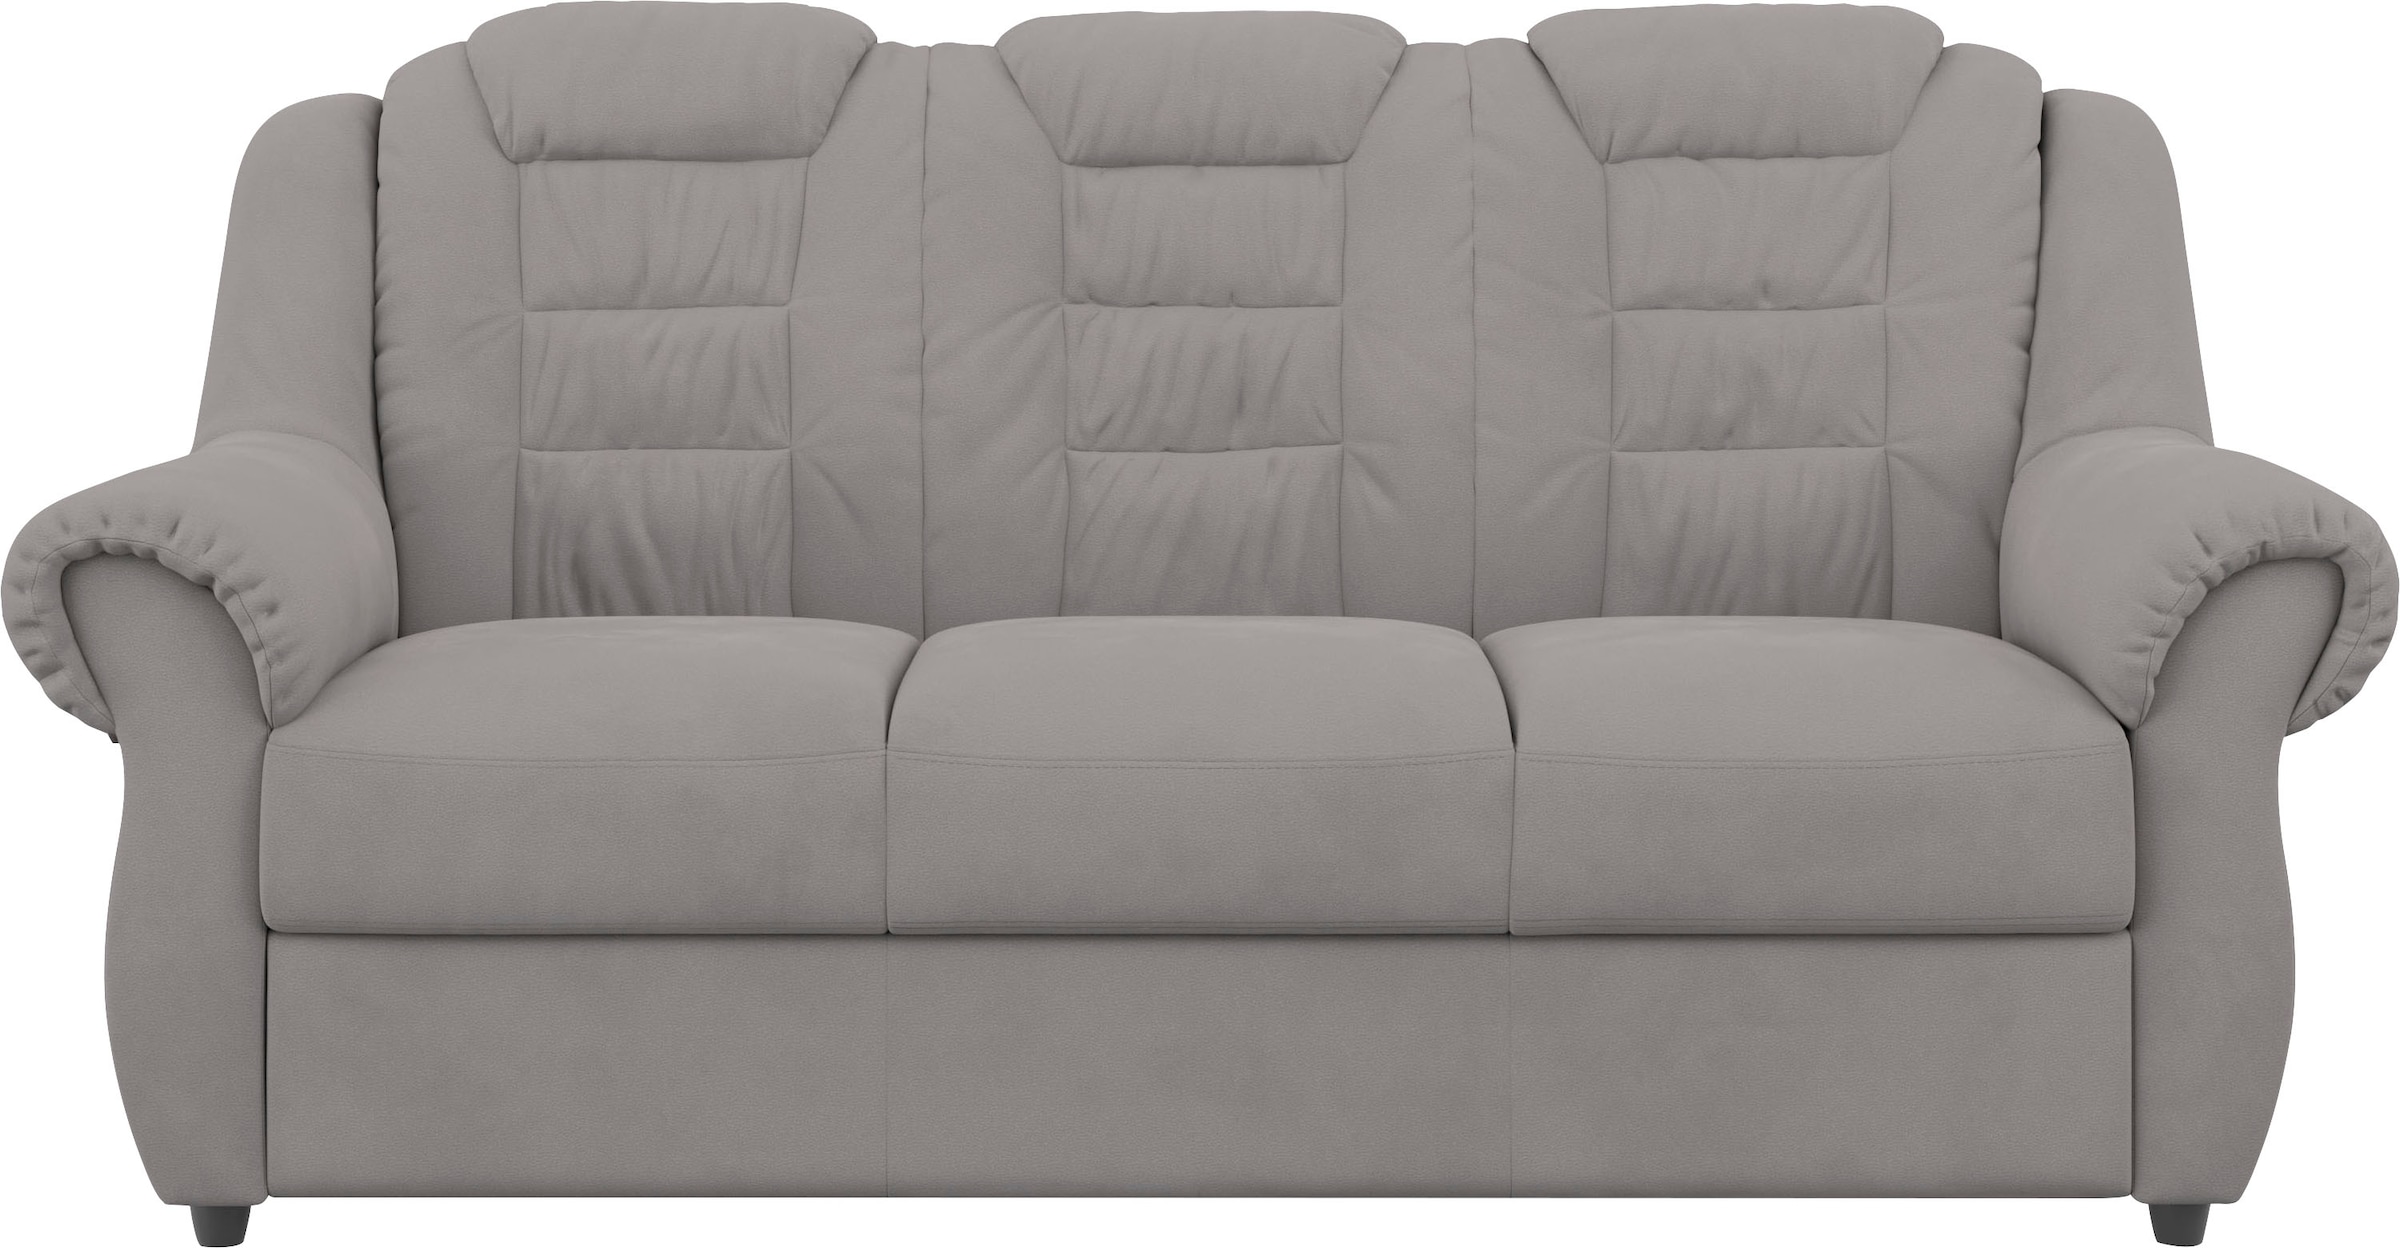 Home affaire 3-Sitzer »Boston«, Gemütlicher 3-Sitzer mit hoher Rückenlehne in klassischem Design